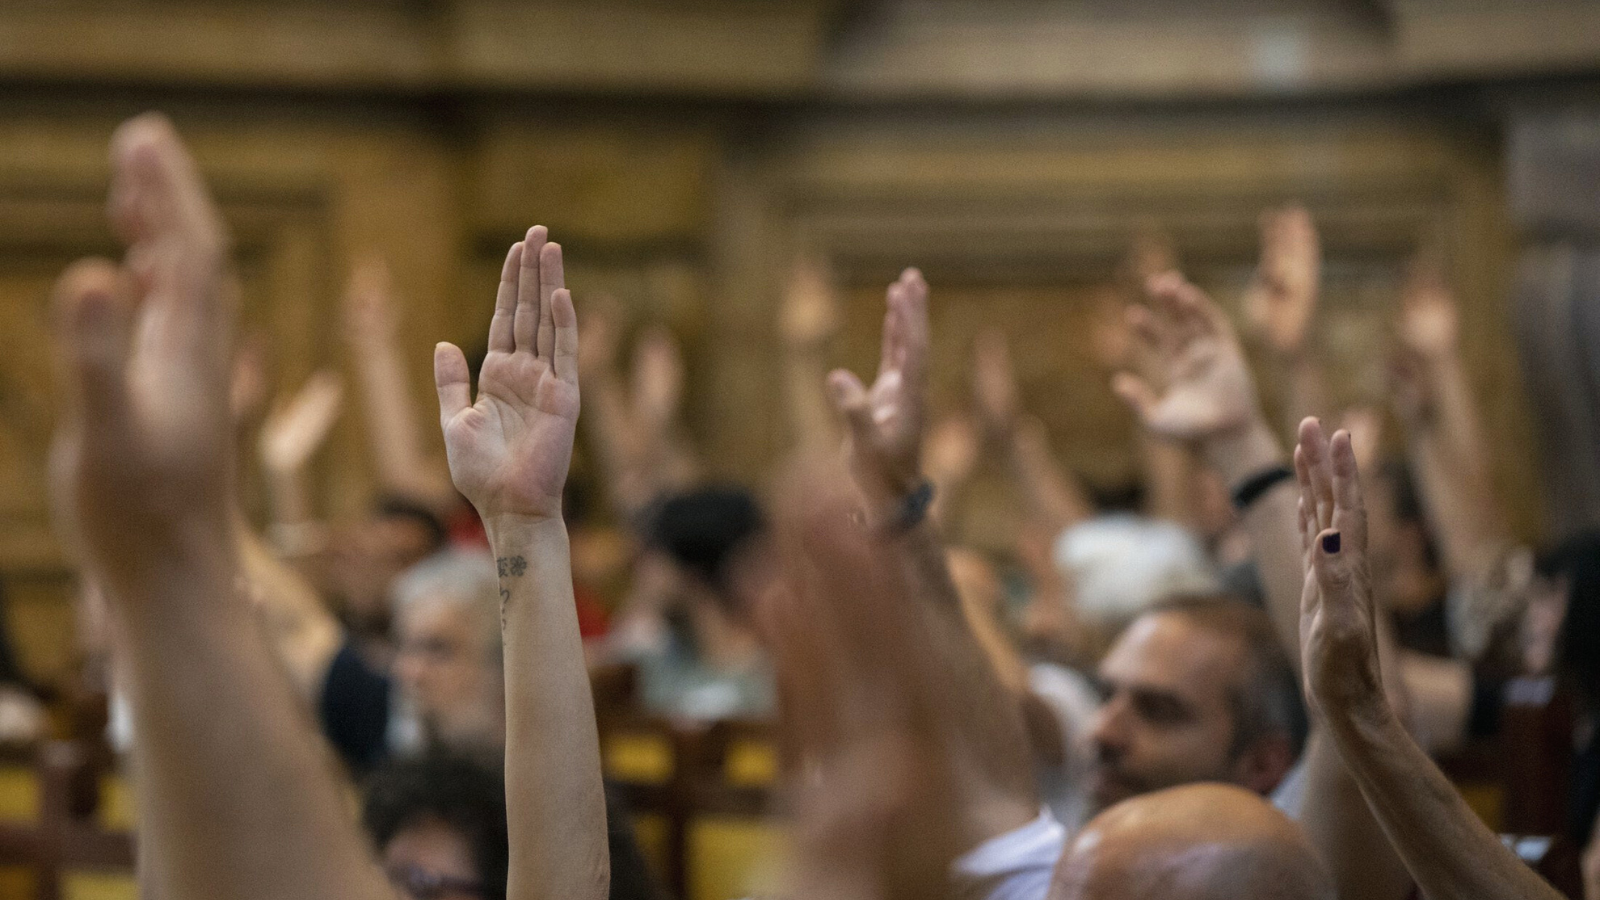 Fotografía en la UCM de manos levantadas en una votación